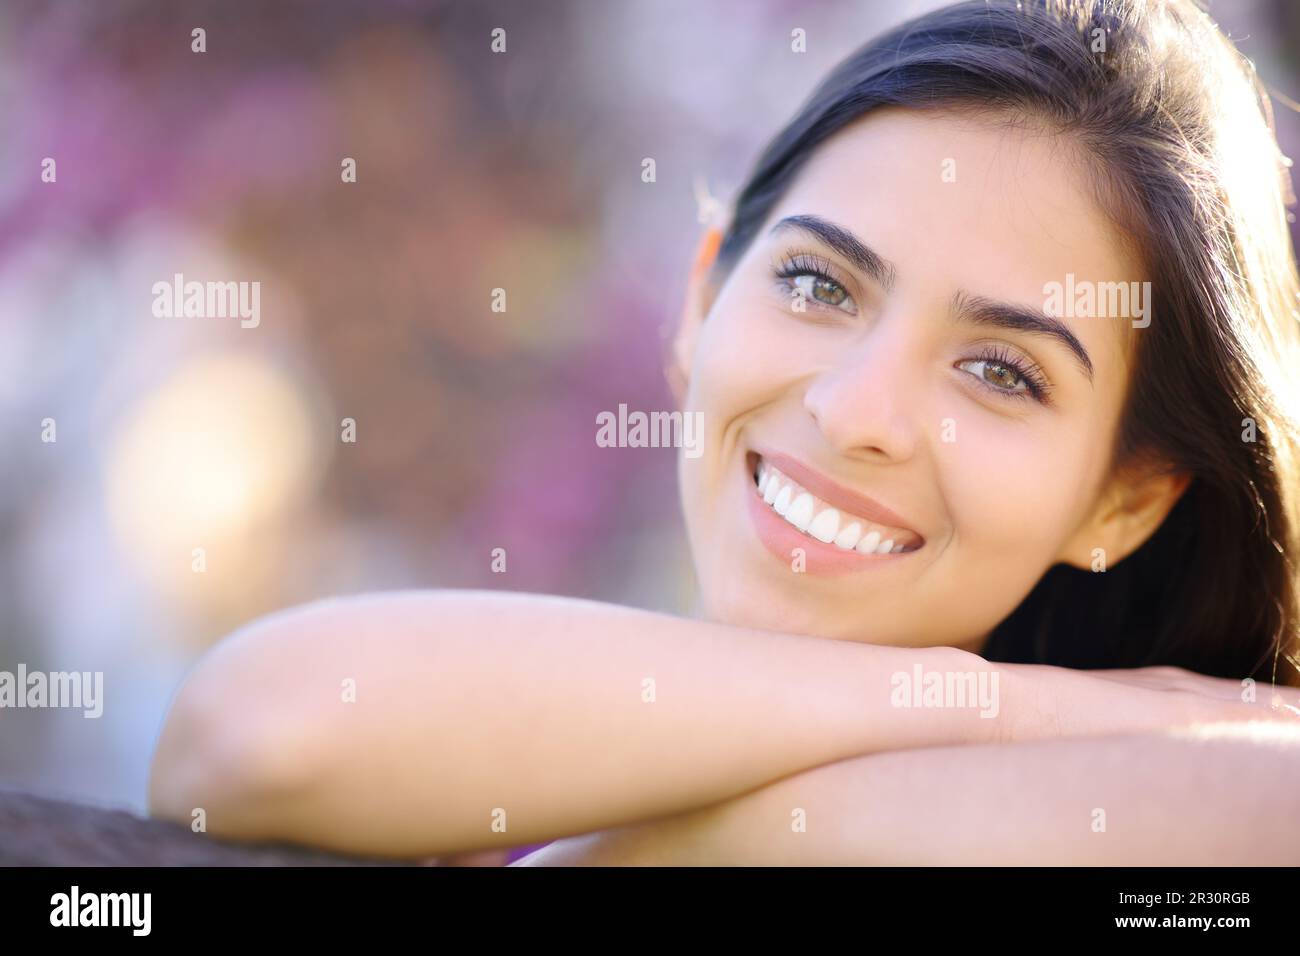 Vista frontal de una mujer hermosa con dientes blancos perfectos sonriendo a usted en un parque Foto de stock